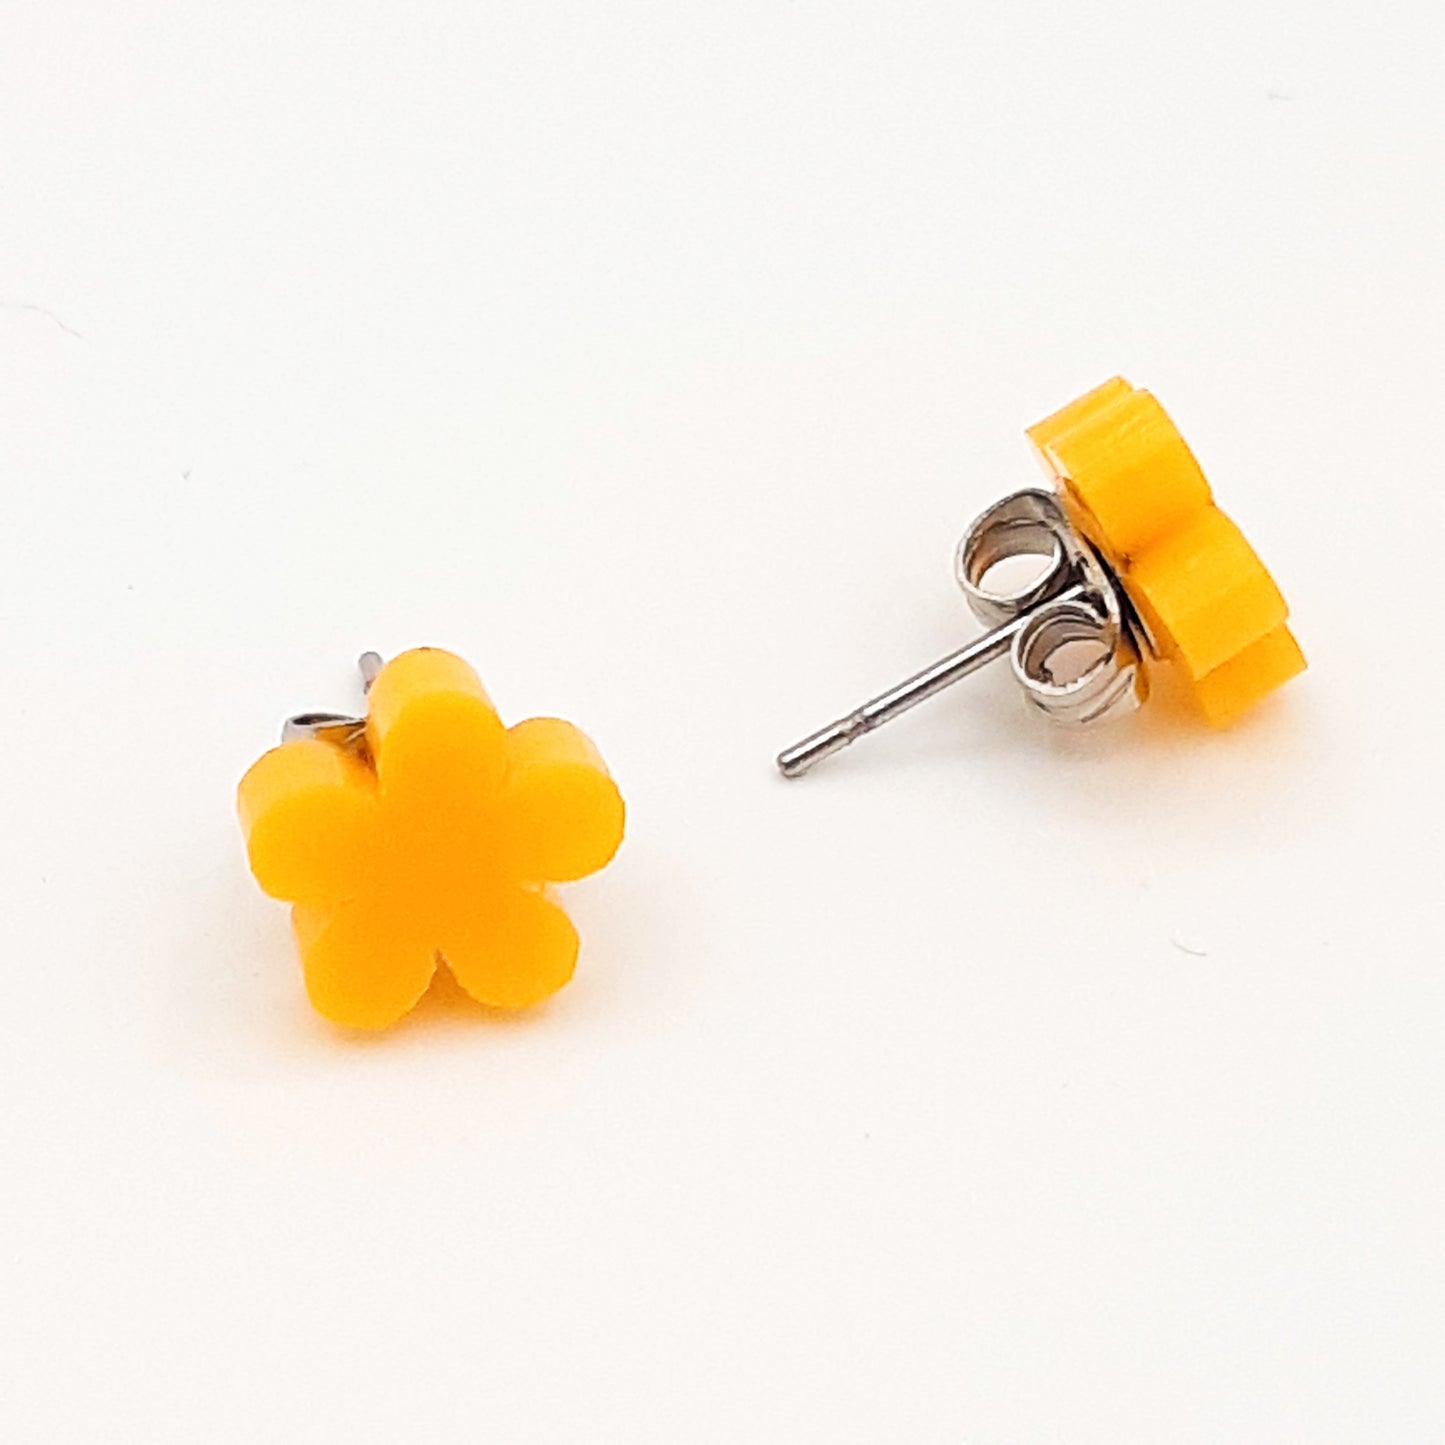 Flower laser cut acrylic earrings - daisy - yellow